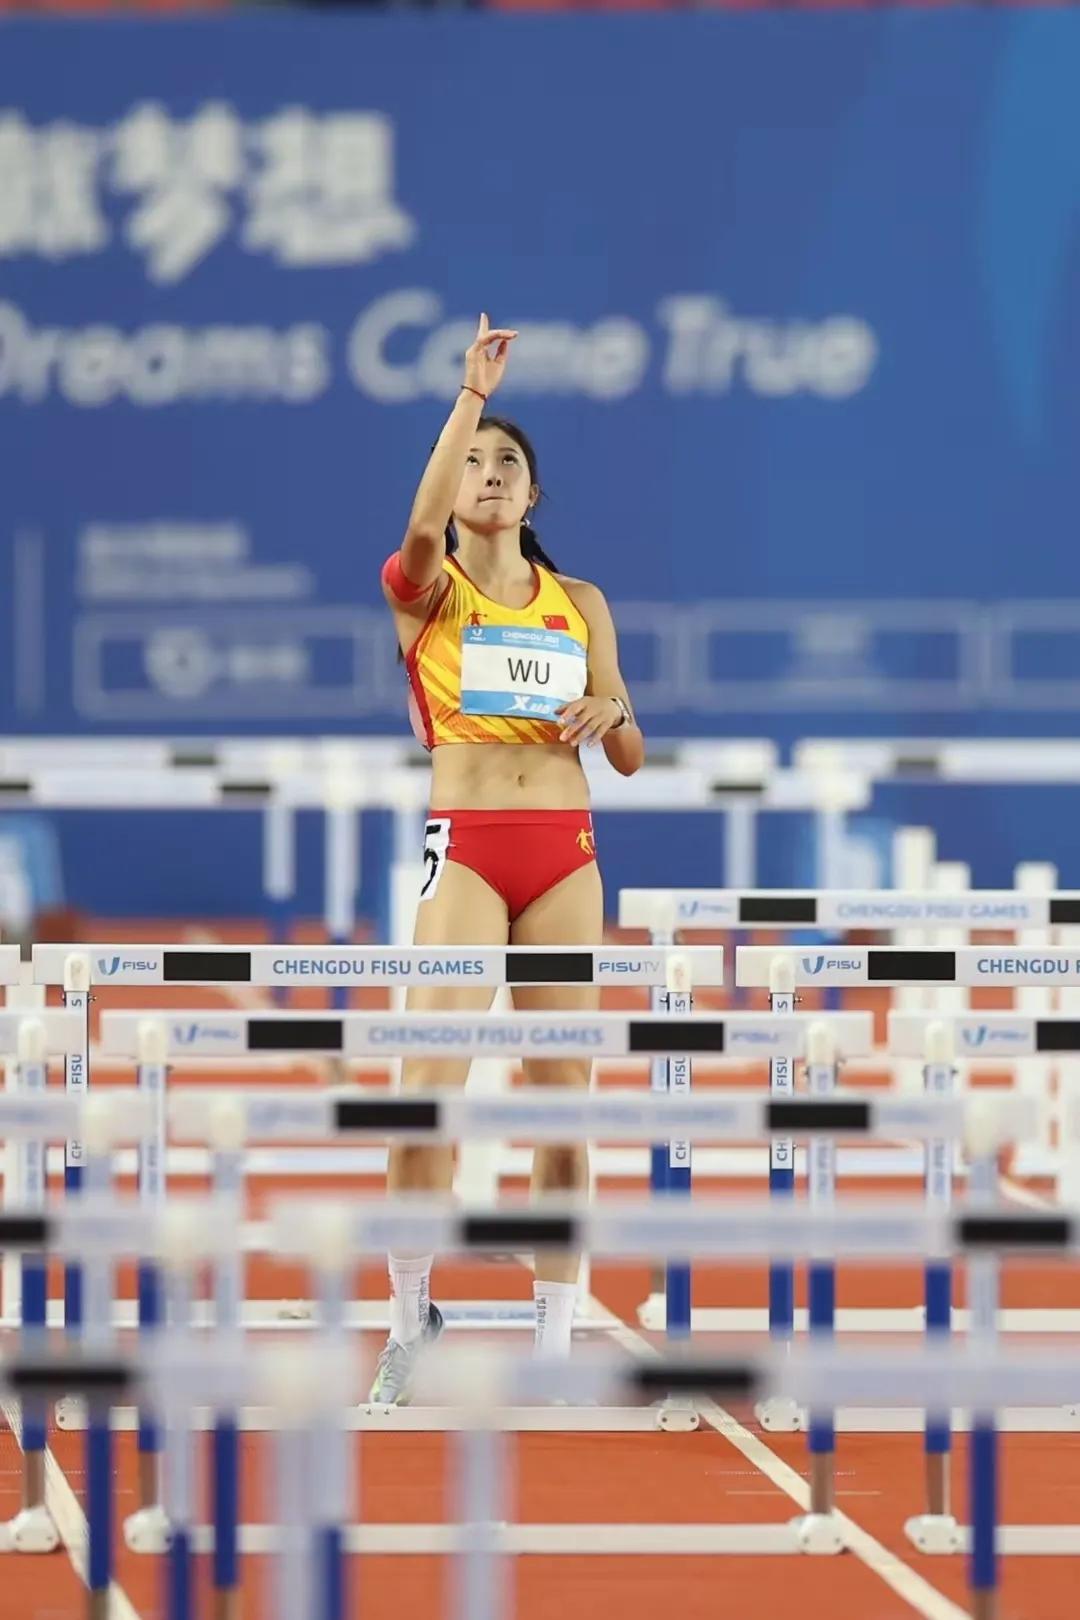 吴艳妮以12秒76的出色表现刷新了个人最佳纪录，并最终获得了银牌。吴艳妮赛前标志(1)